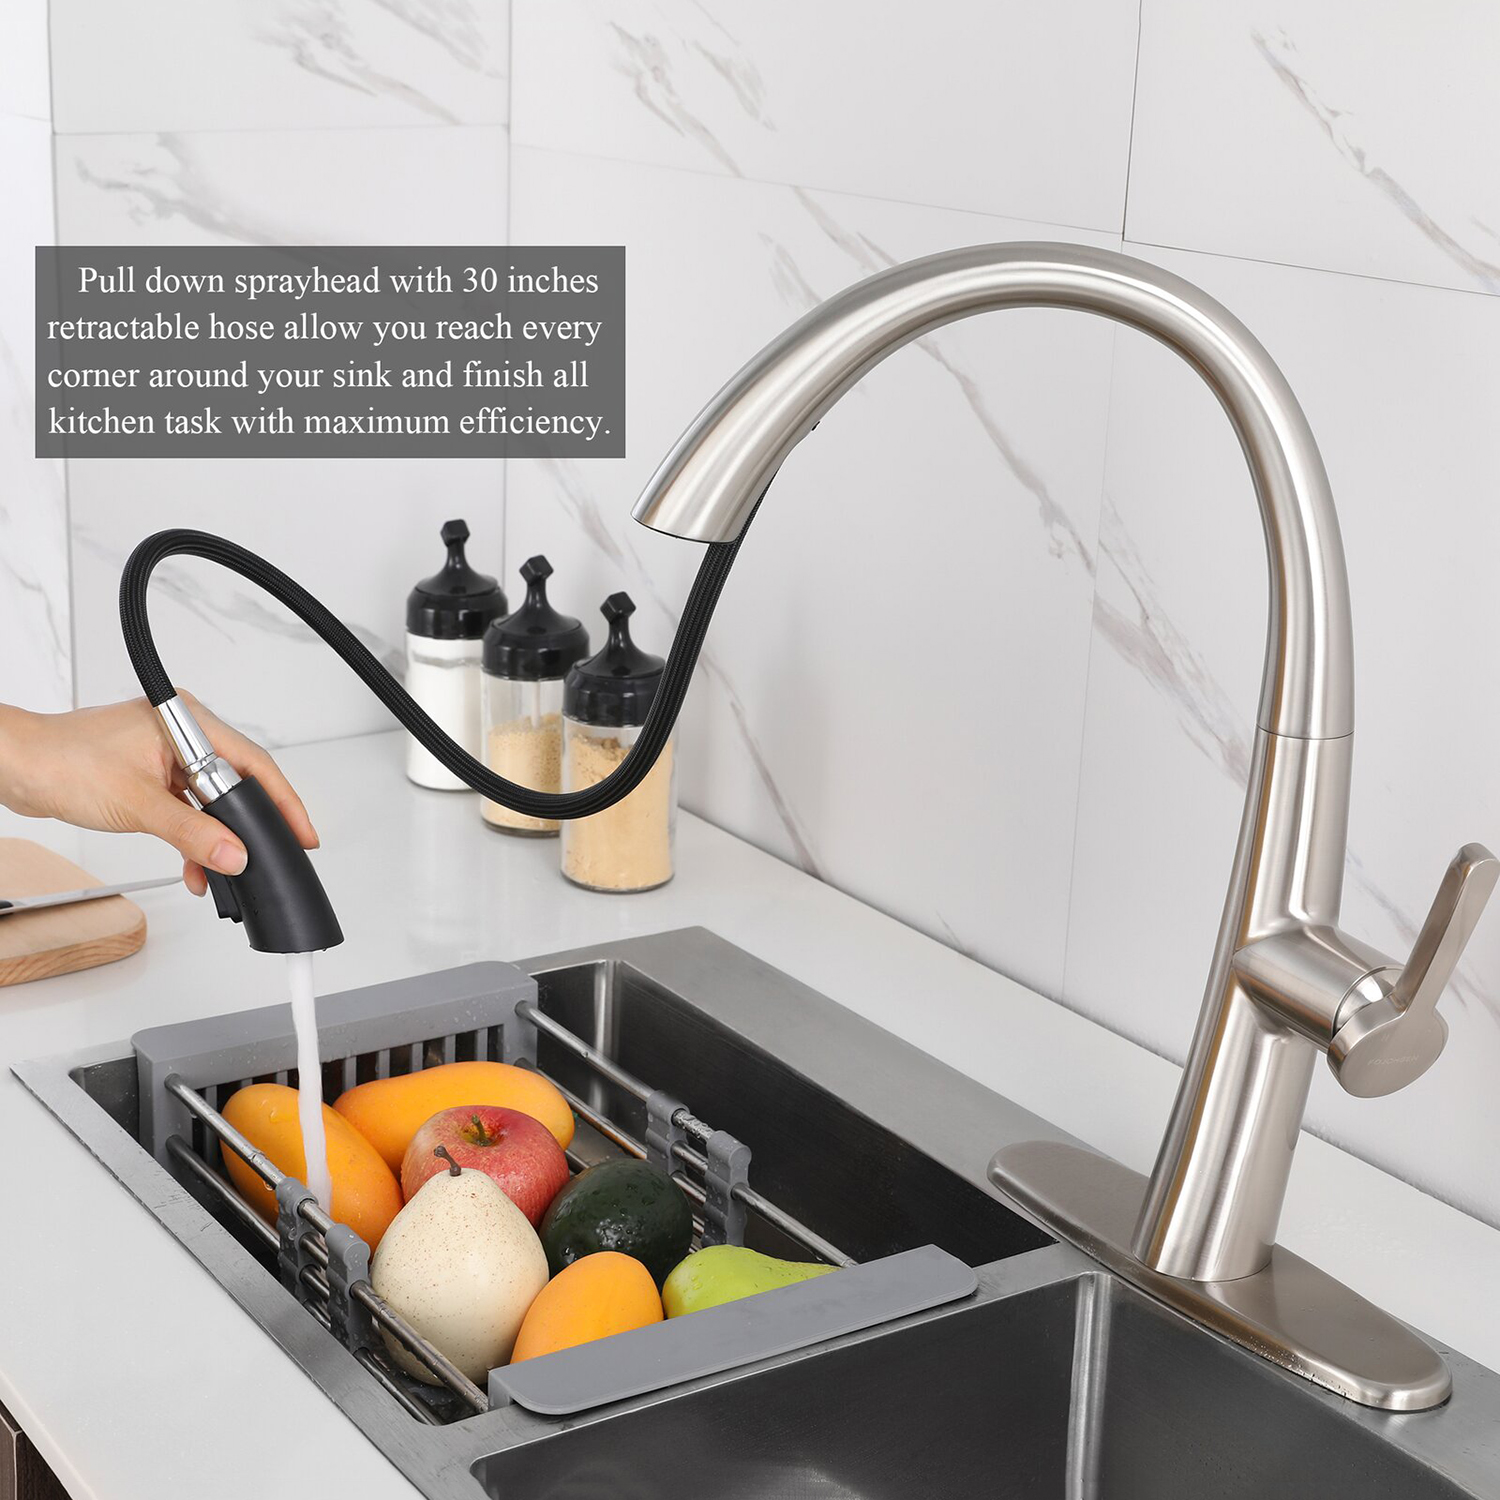 Le robinet de cuisine Aquacubic avec pulvérisateur rétractable offre un nettoyage efficace du robinet d'évier de cuisine